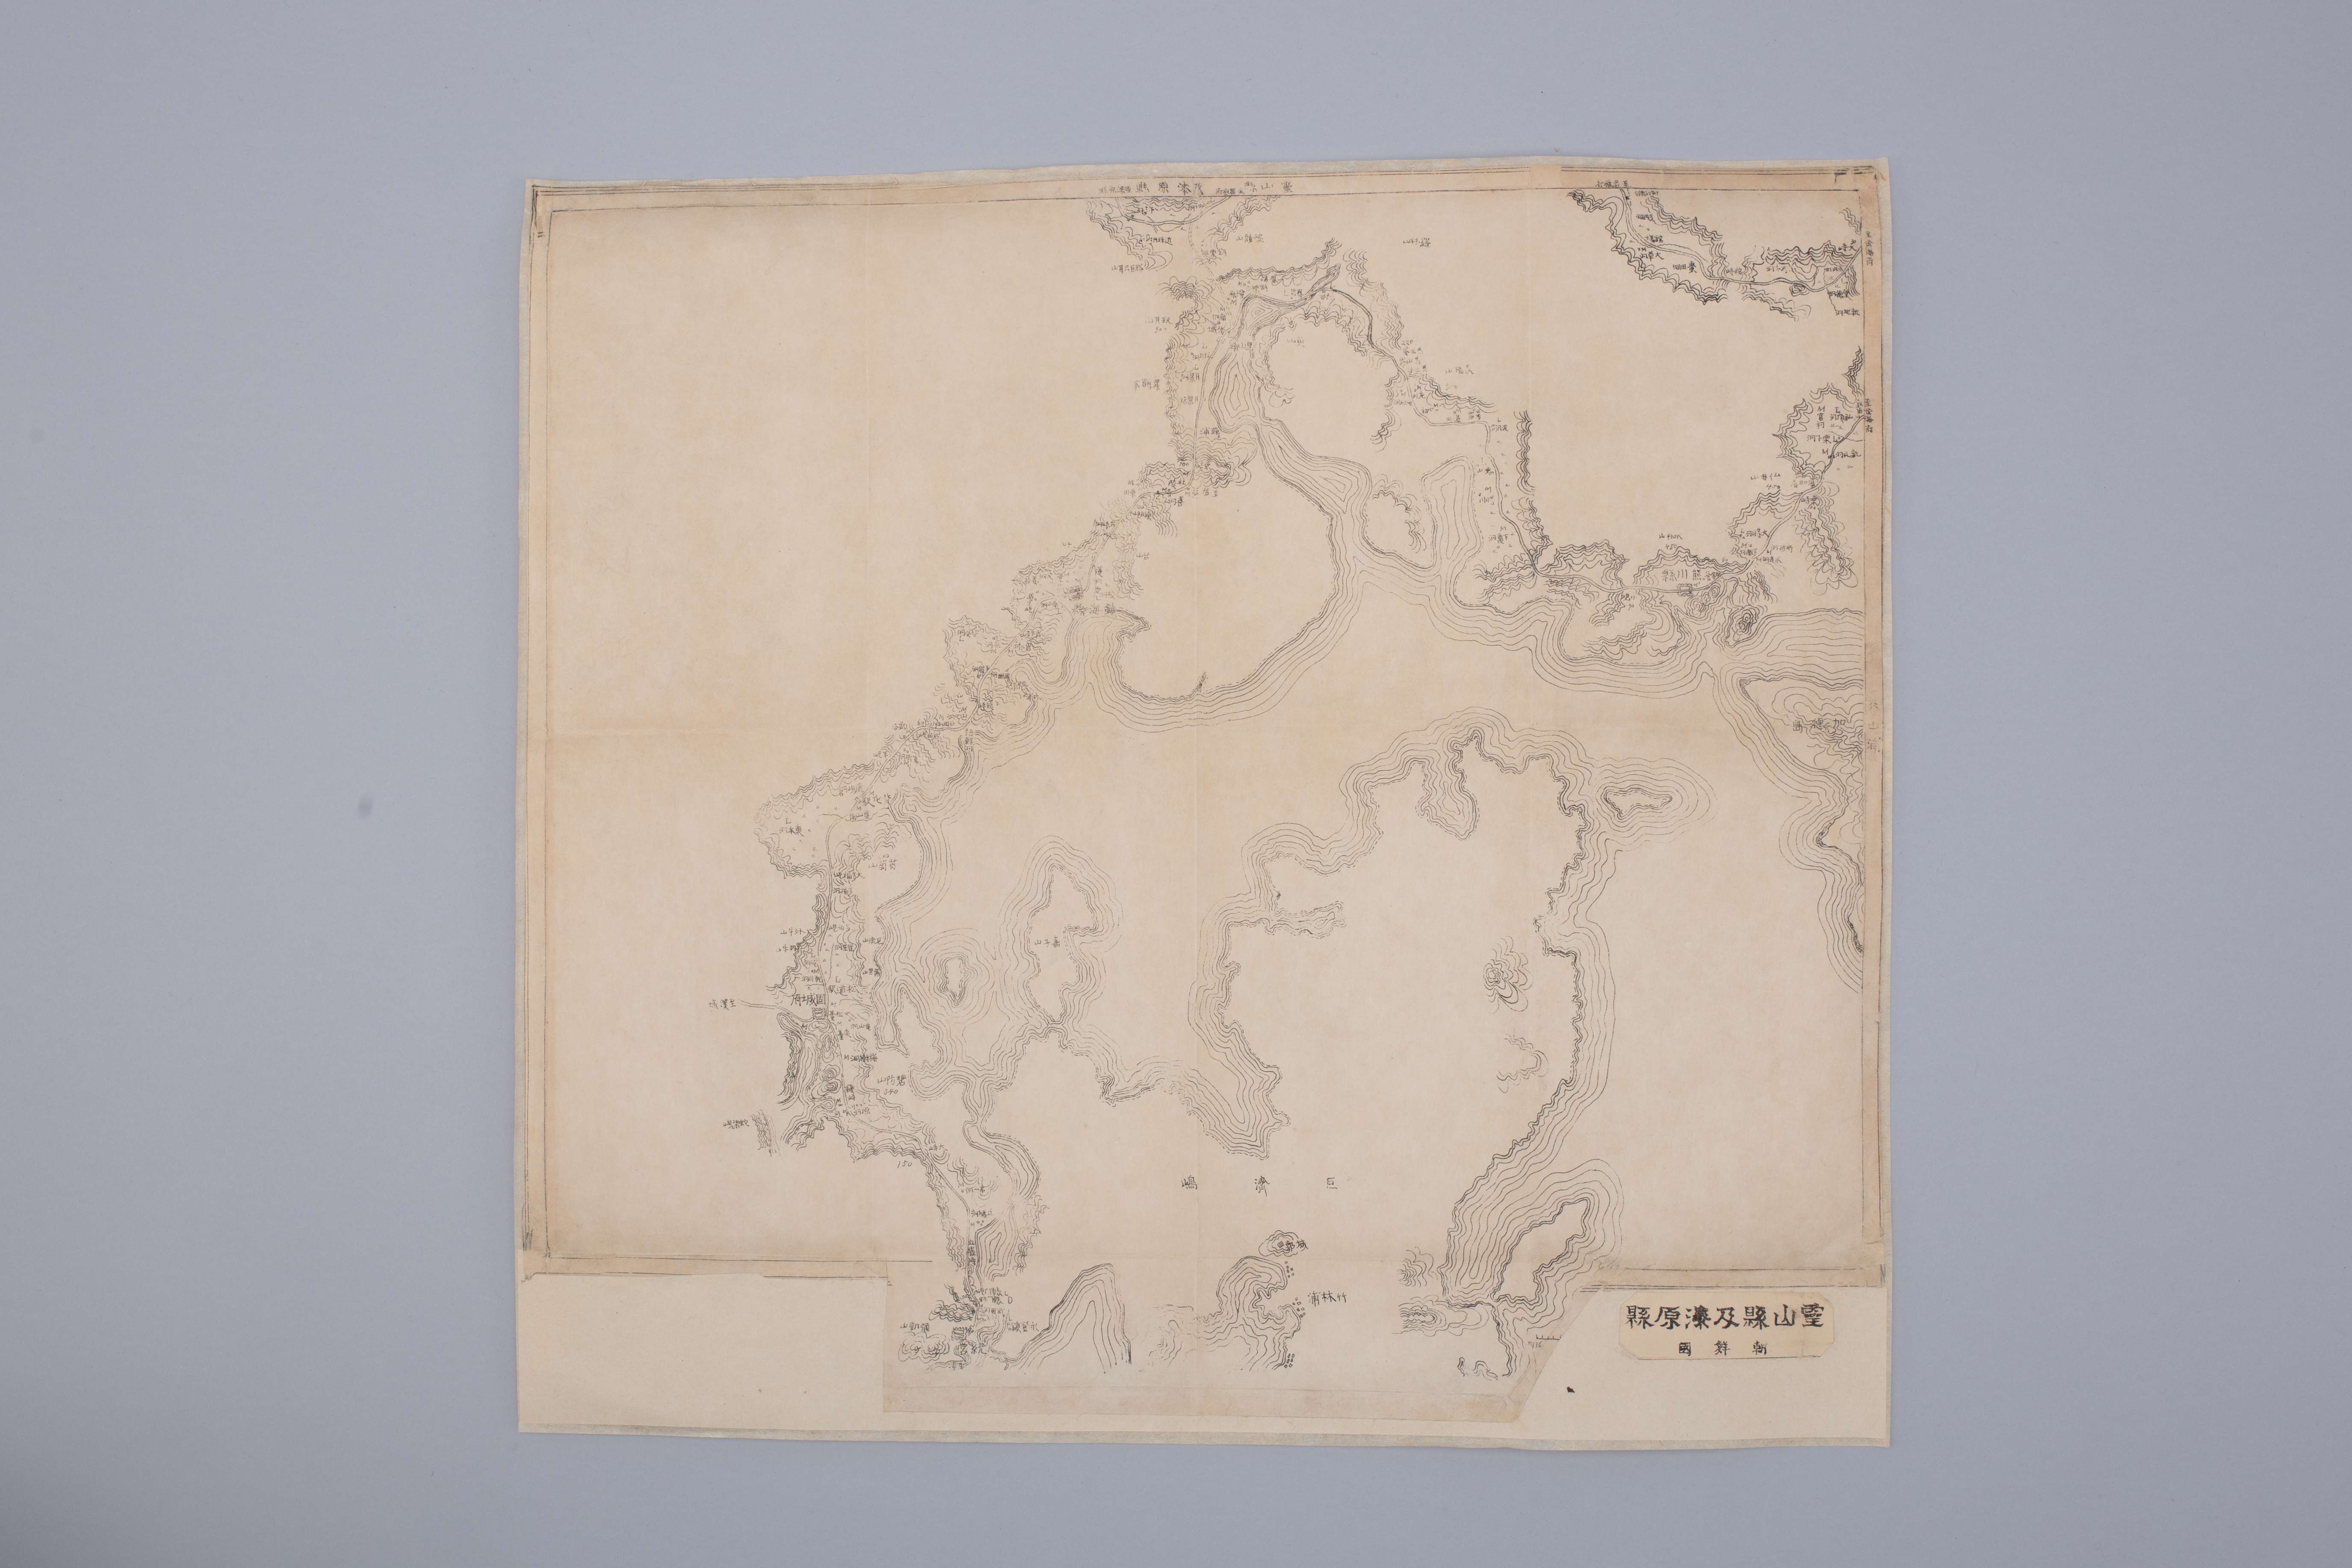 ‘영산현 및 칠원현 지도’ 등 일제강점기 해안 지도